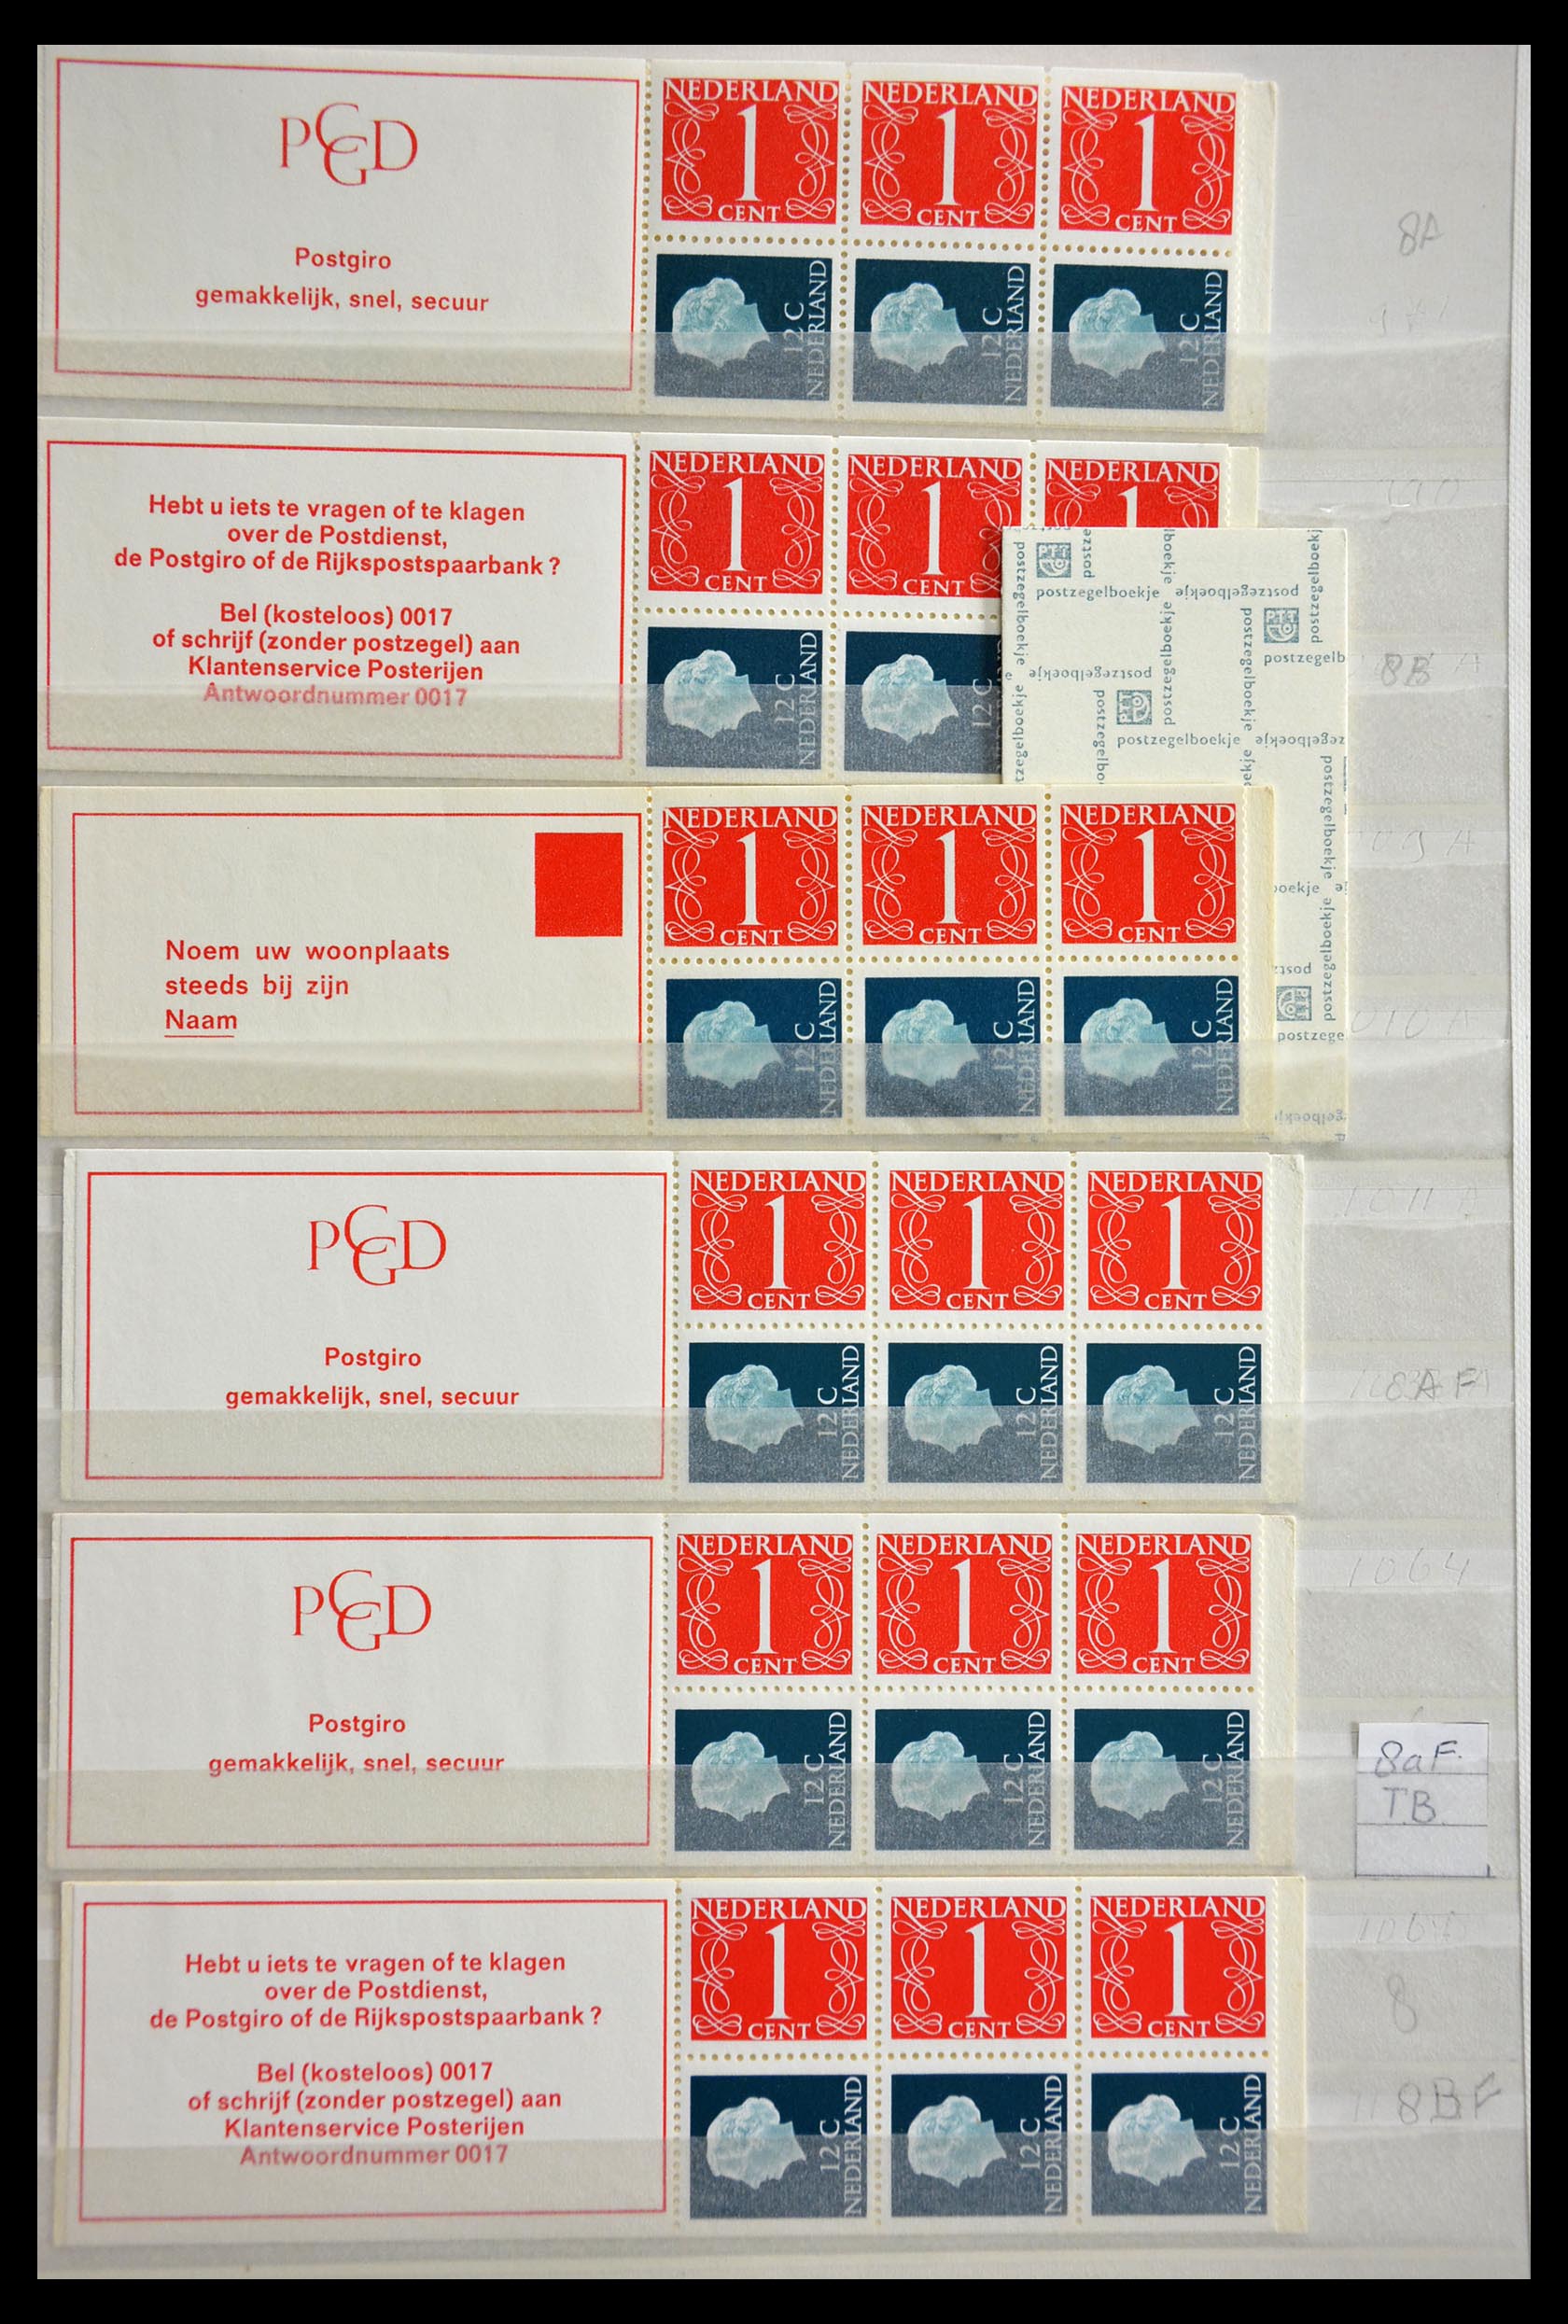 29387 004 - 29387 Netherlands stamp booklets 1964-2014.